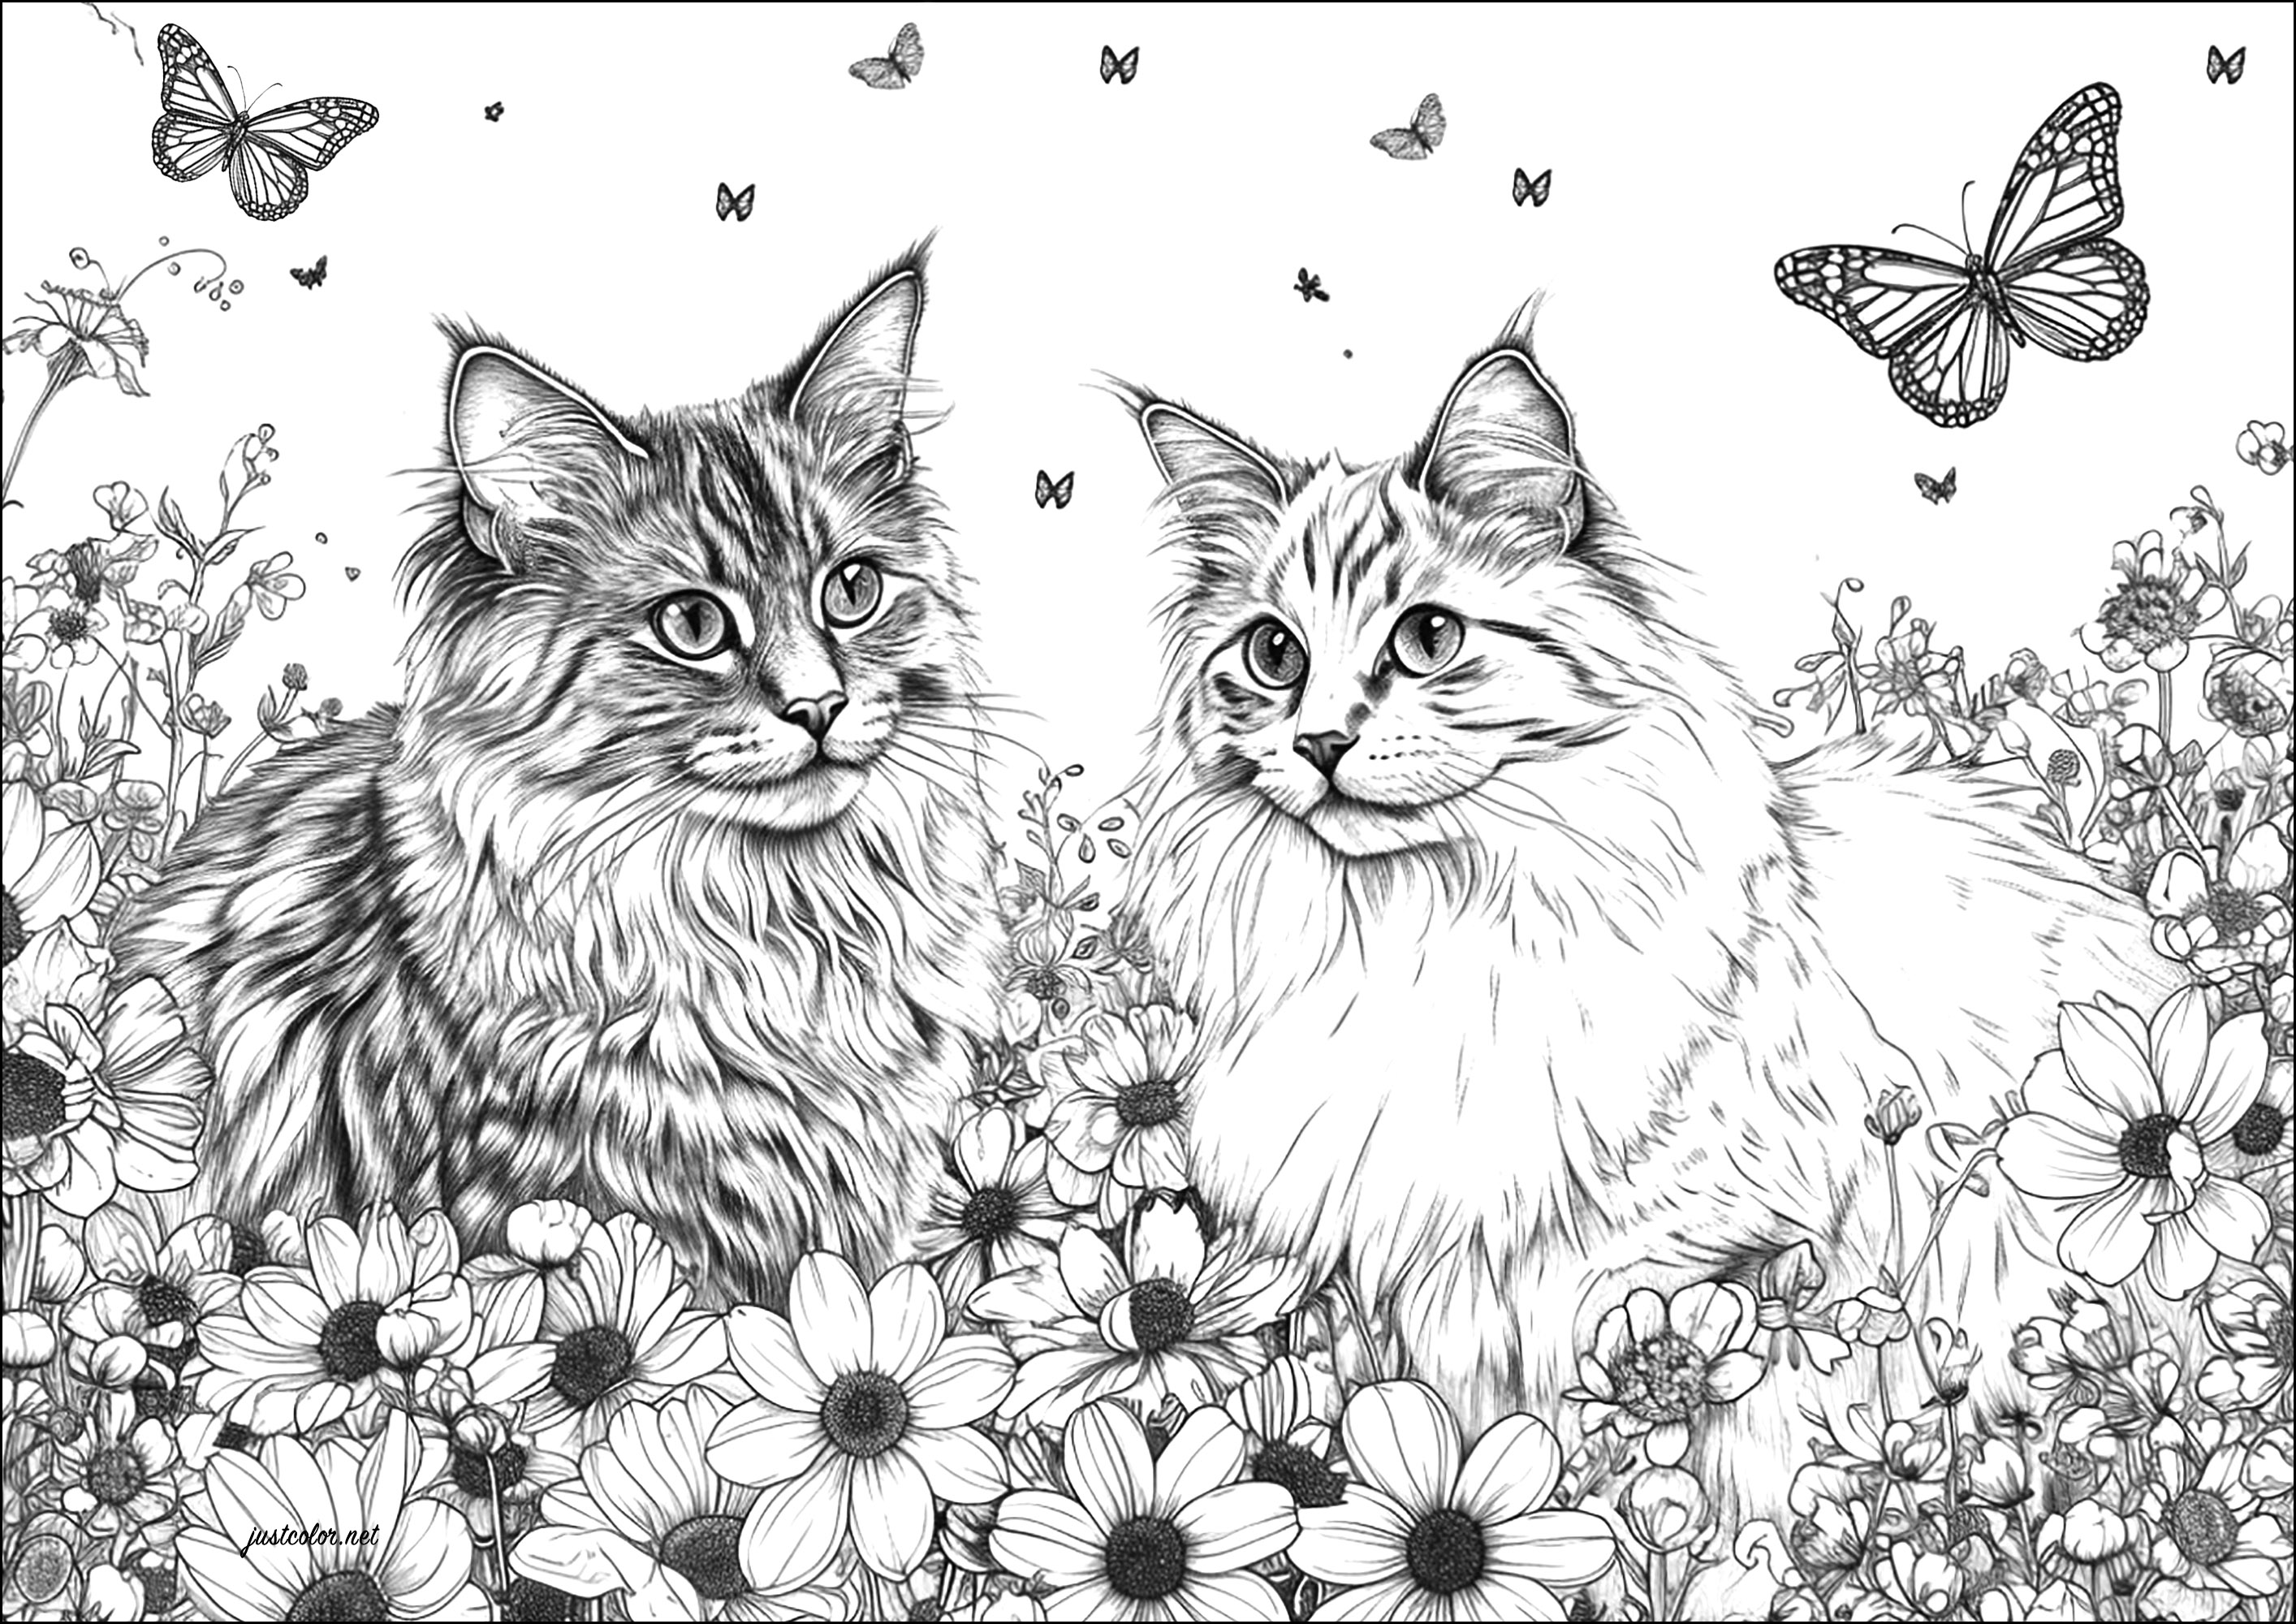 Zwei sehr realistische Katzen mit Blumen und Schmetterlingen. Eine sehr realistische Zeichnung, die stundenlange Arbeit erfordern wird.